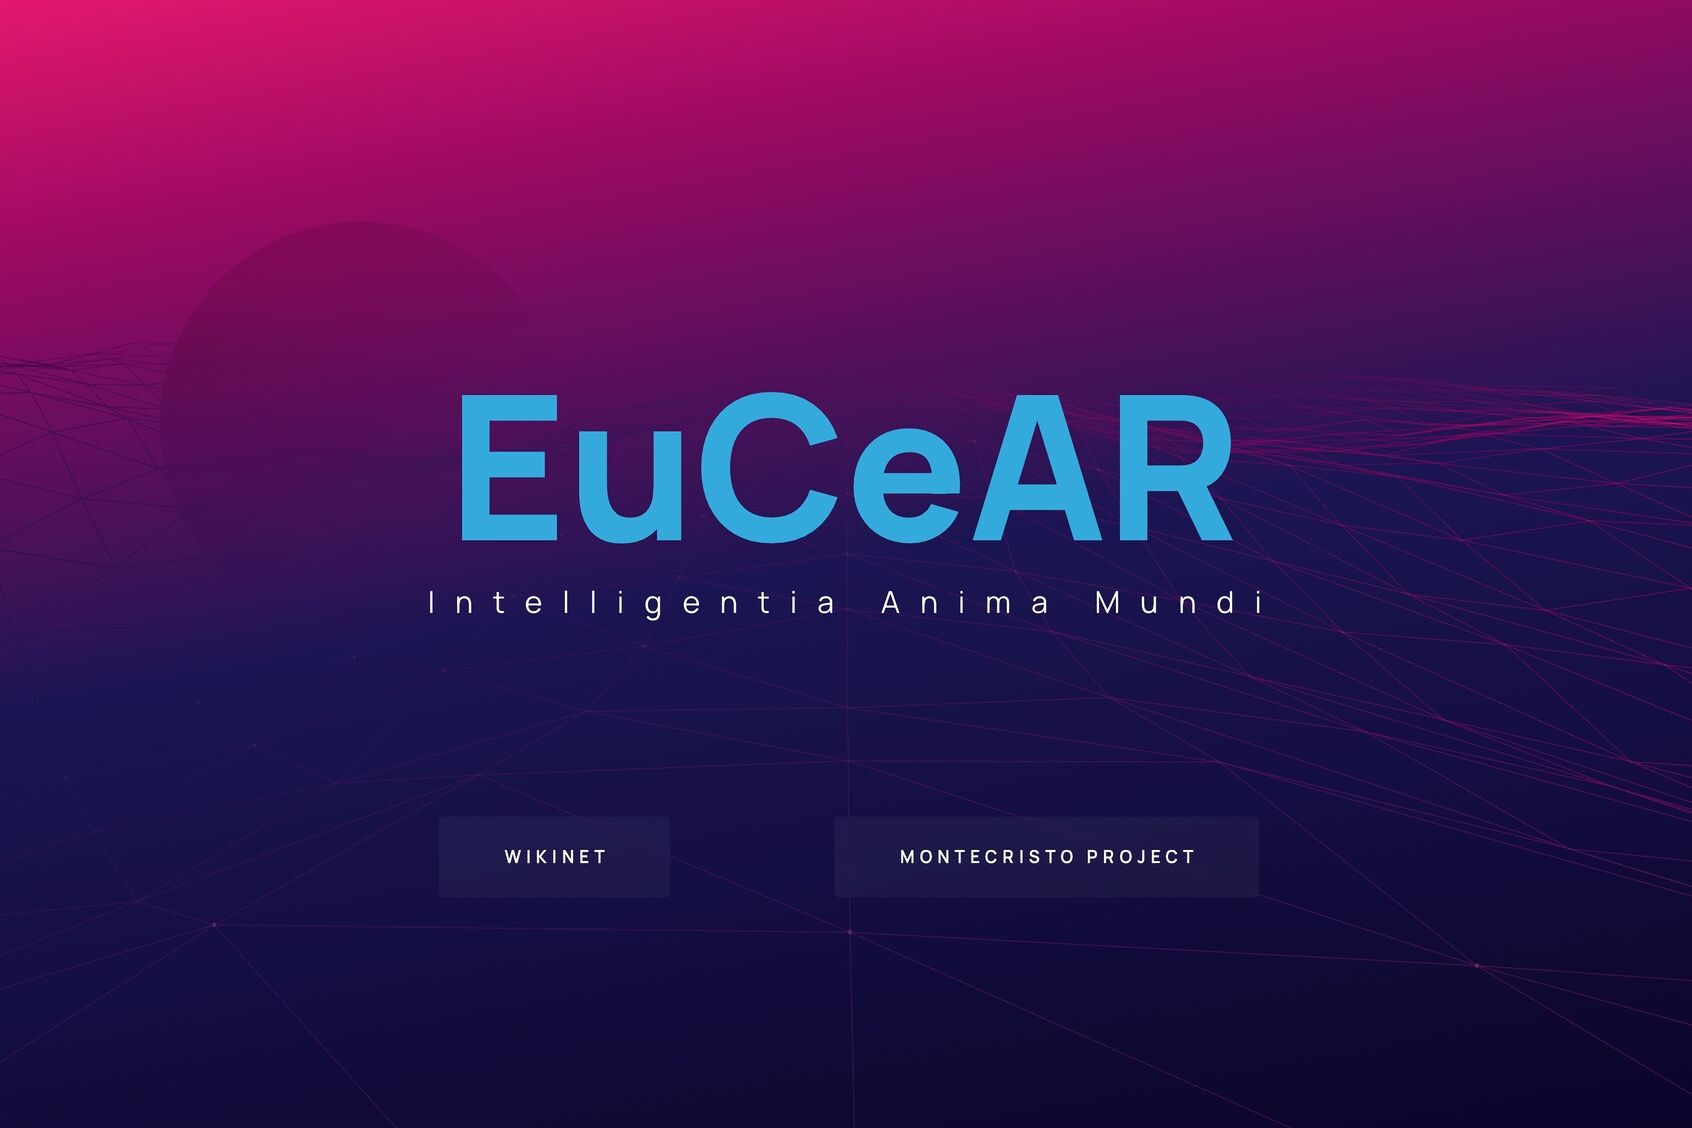 Literatura innovadora: la página de inicio del "Centro Europeo de Investigación Avanzada", abreviado "EuCEAR", creado por Edoardo Volpi Kellermann